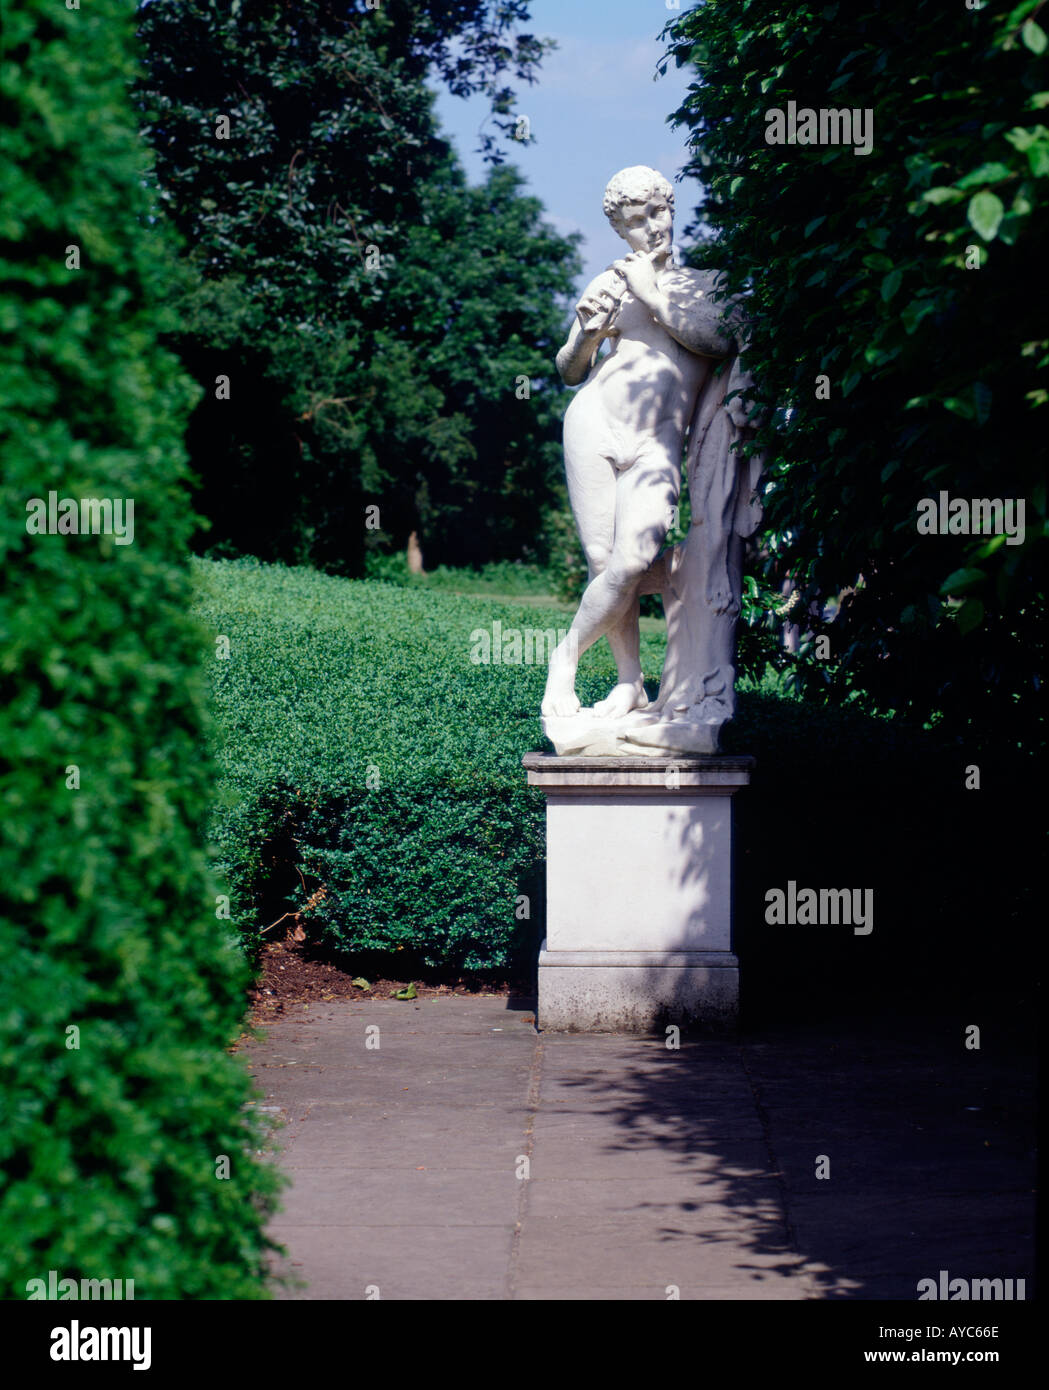 Statua del dio Pan dietro la siepe nei giardini della casa olandese Kew Gardens Londra Inghilterra Foto Stock